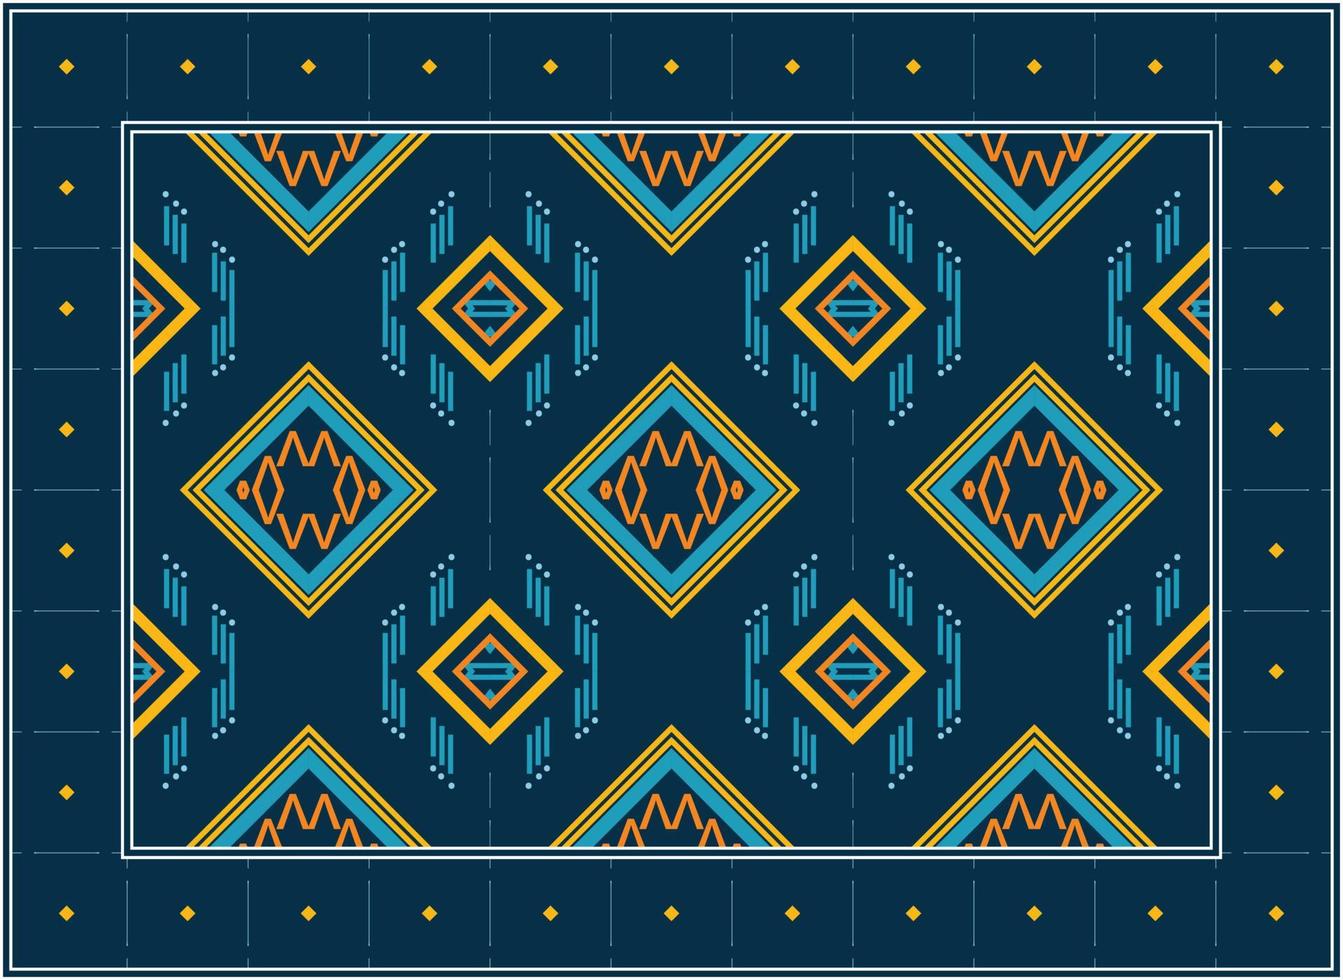 persa alfombra patrones, africano étnico sin costura modelo escandinavo persa alfombra moderno africano étnico azteca estilo diseño para impresión tela alfombras, toallas, pañuelos, bufandas alfombra, vector